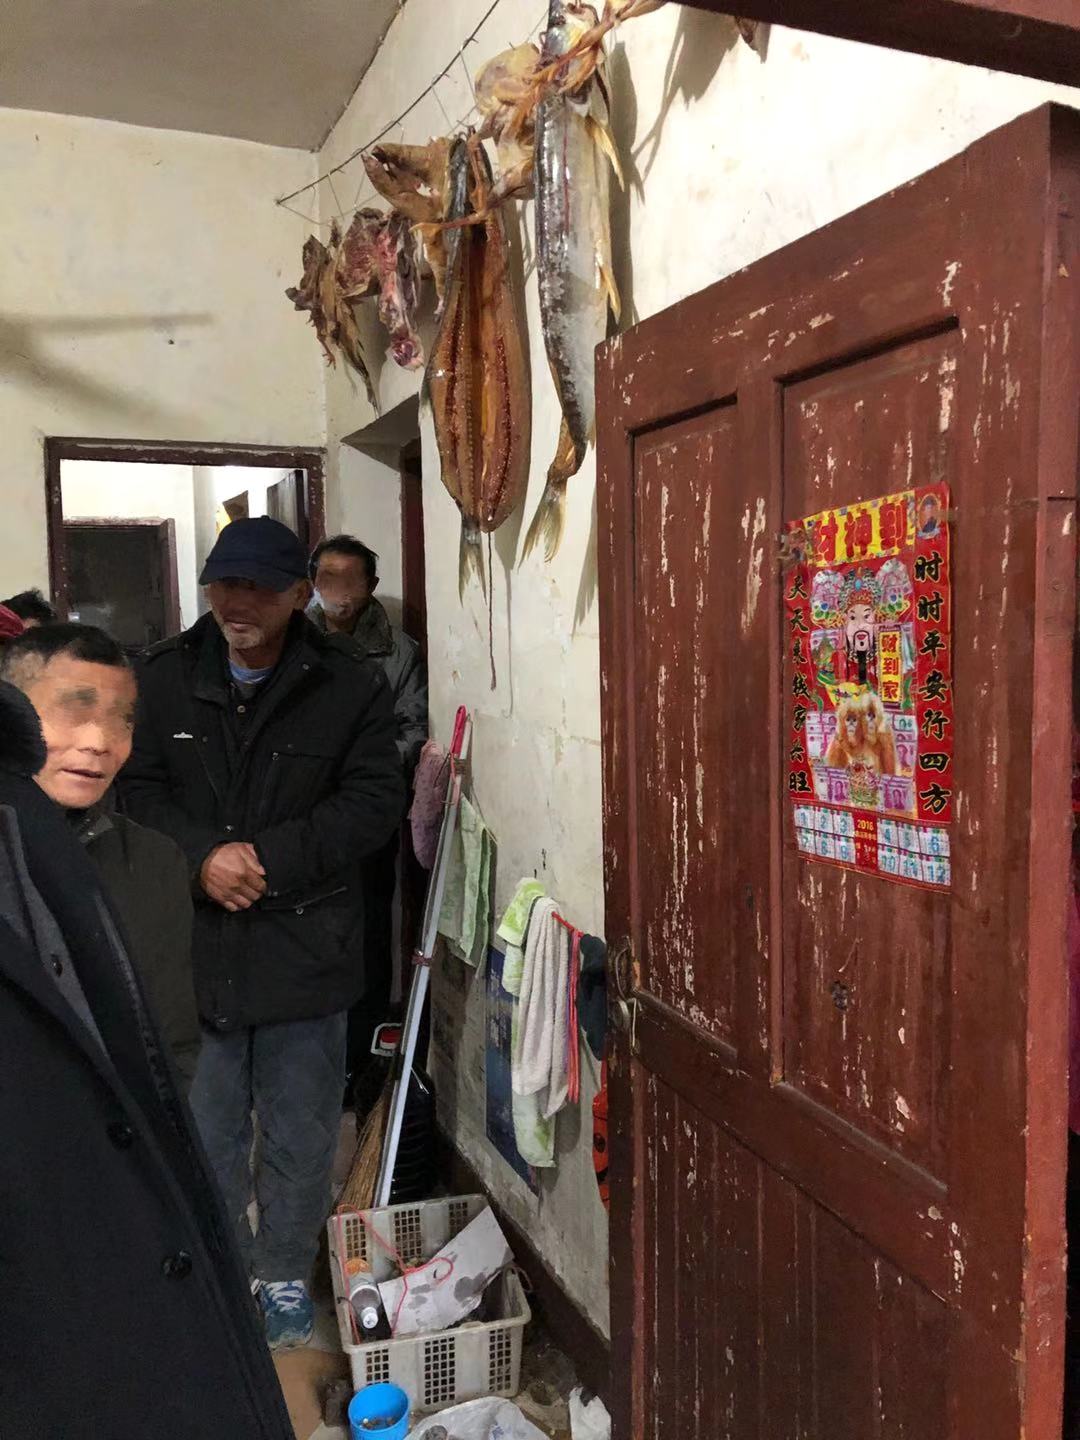  渔民租住的房屋，墙壁上挂着鱼干。 新京报记者 韩沁珂 摄